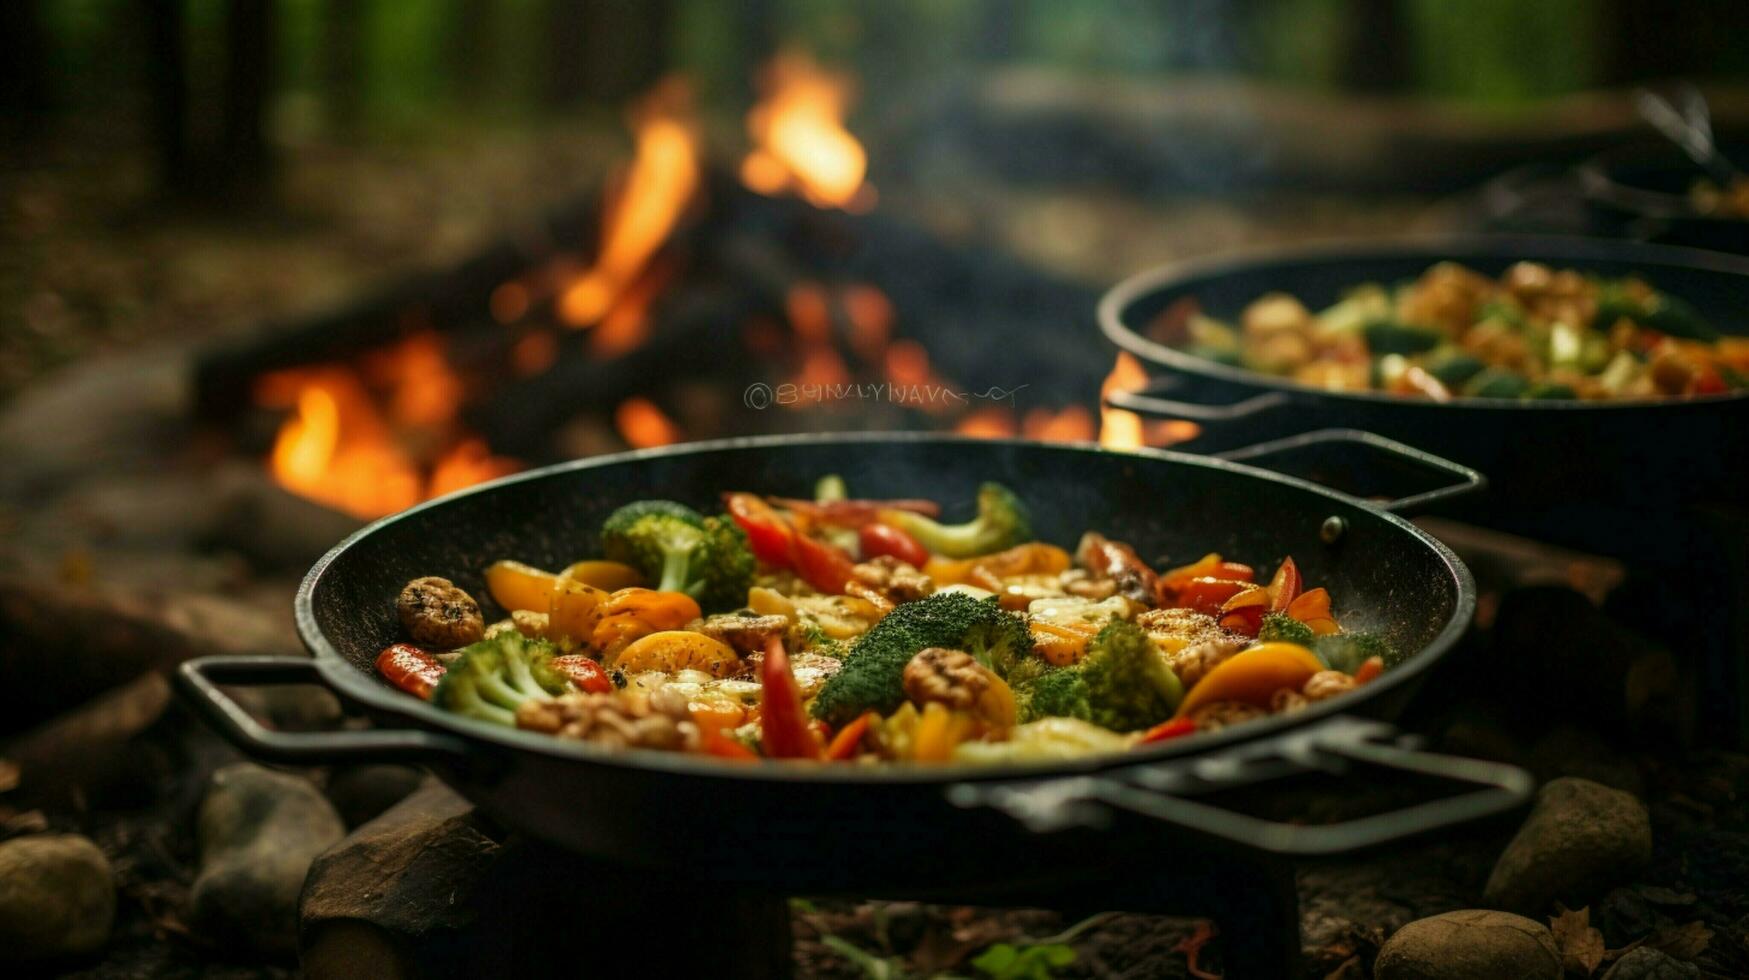 saudável vegetariano refeição cozinhou ao ar livre em madeira chama foto